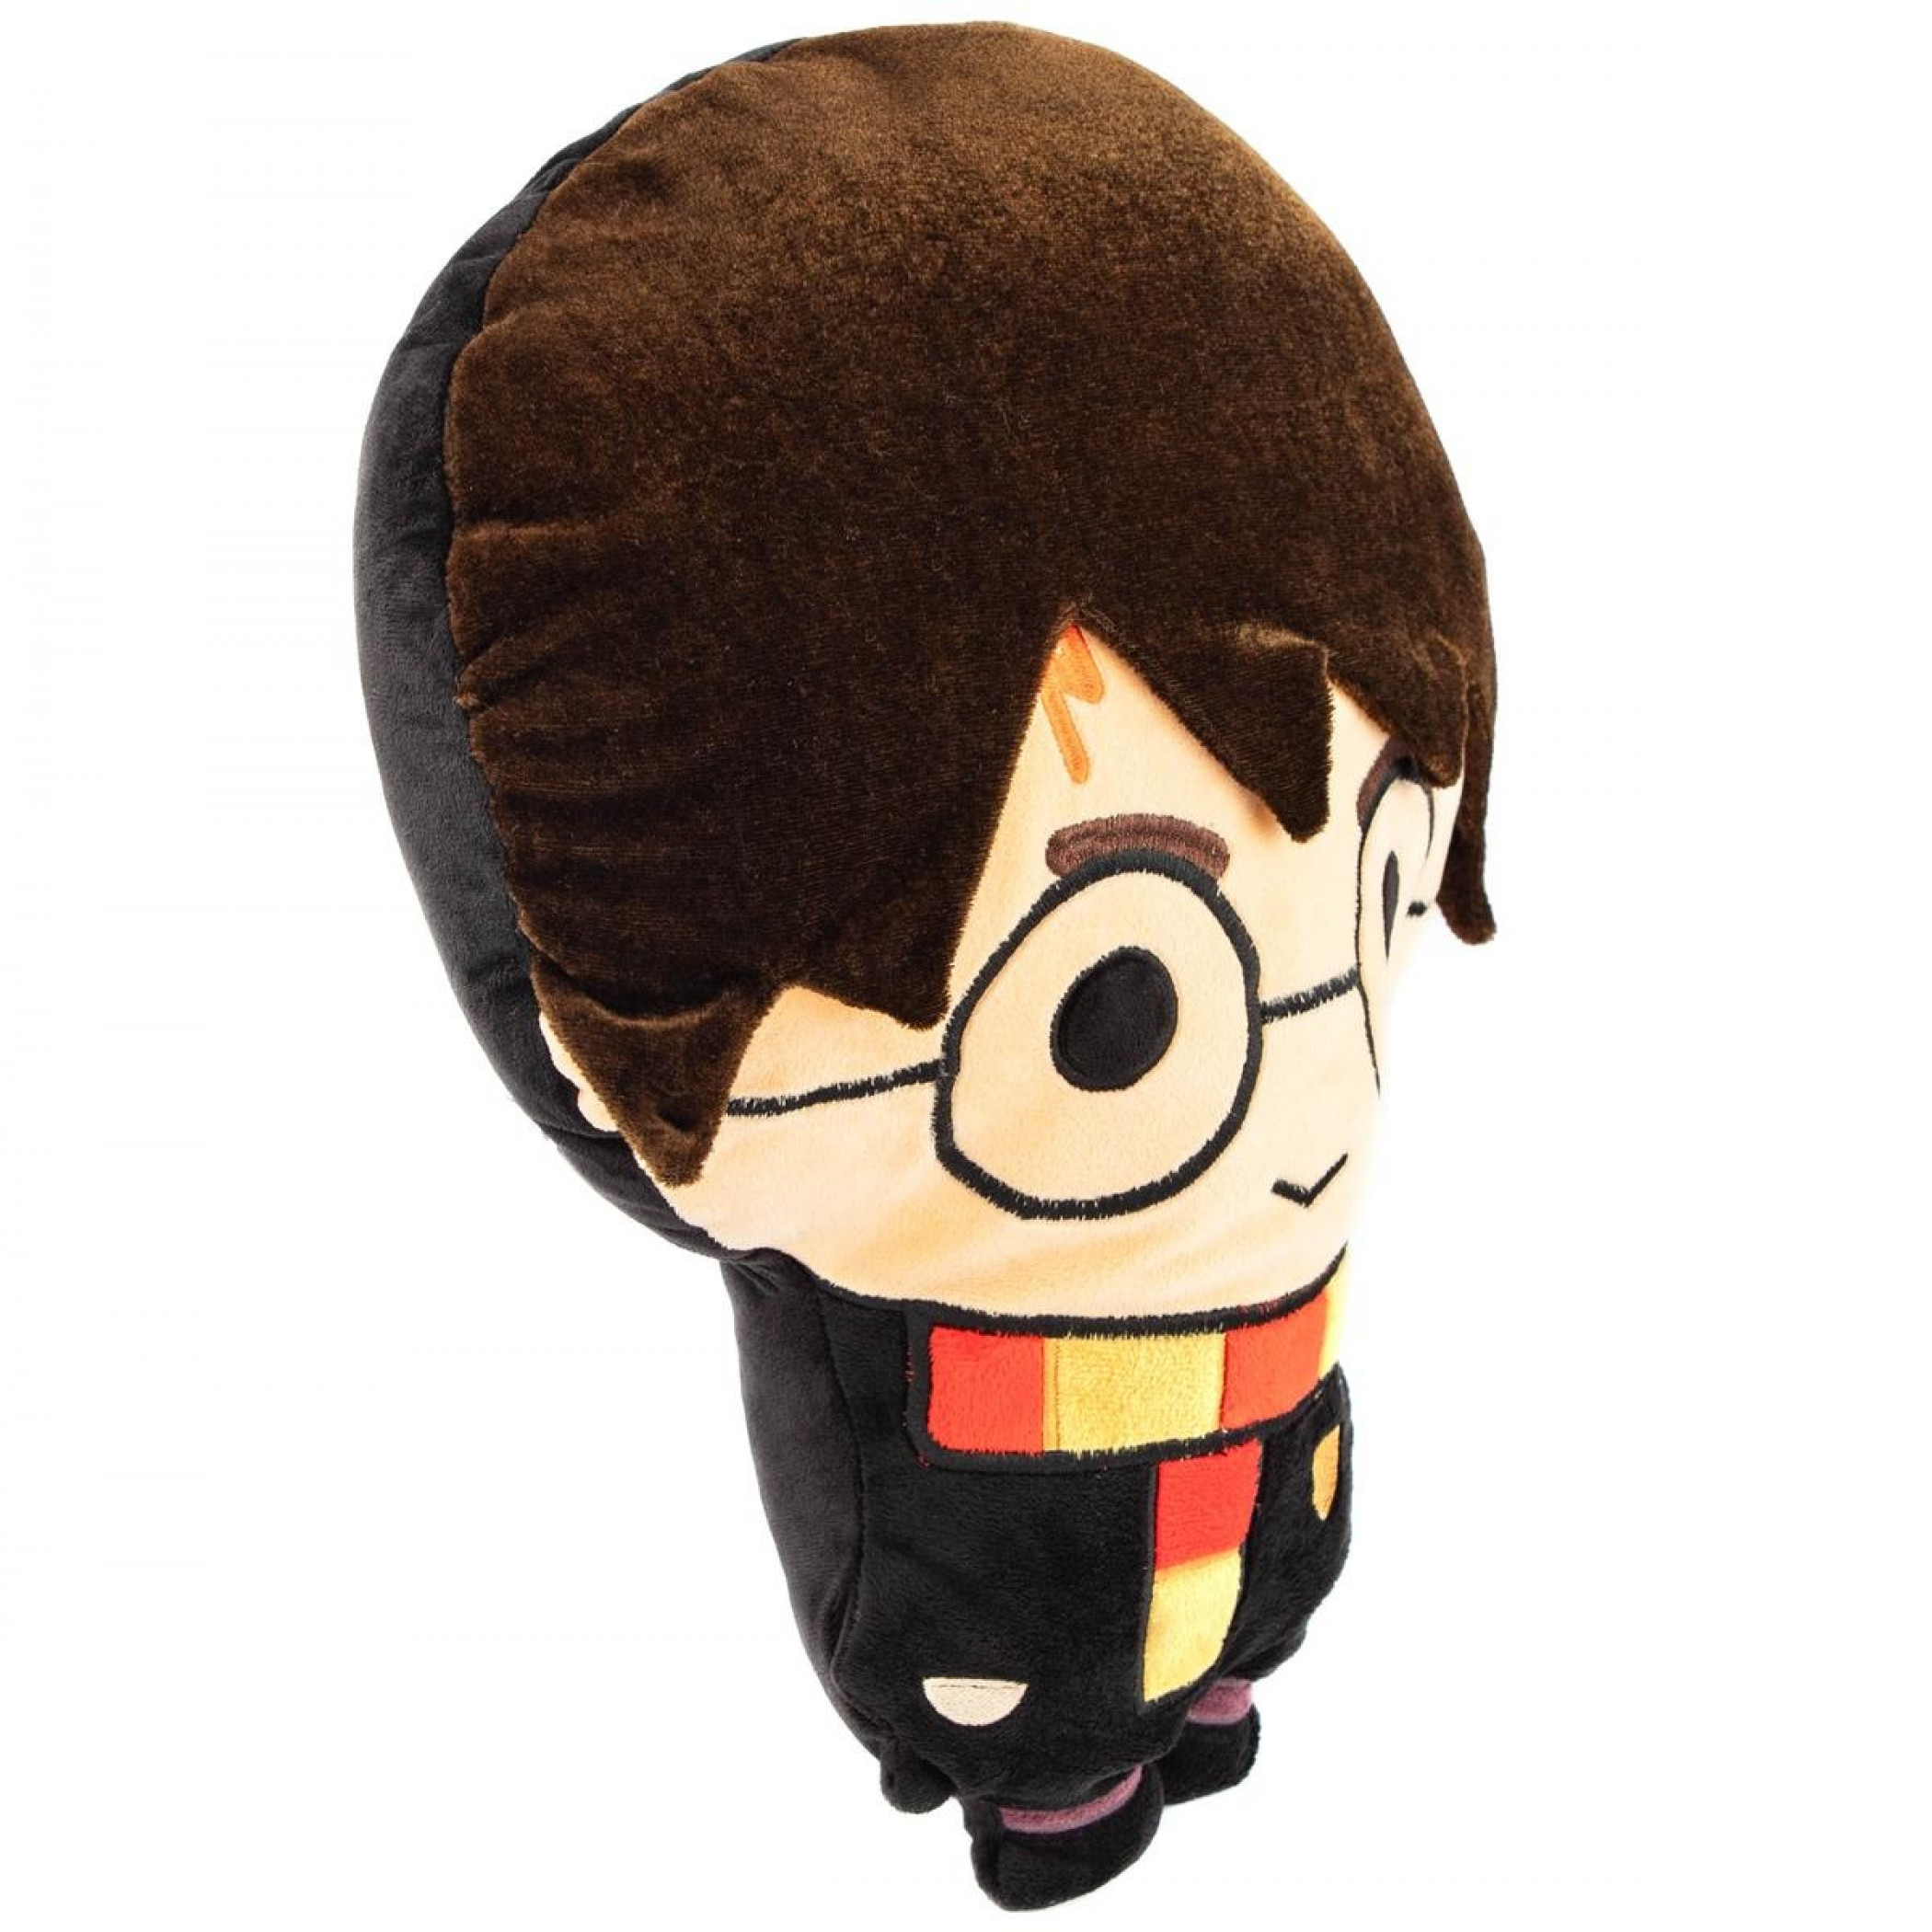 Harry Potter Chibi Stuffed Pillow Buddy